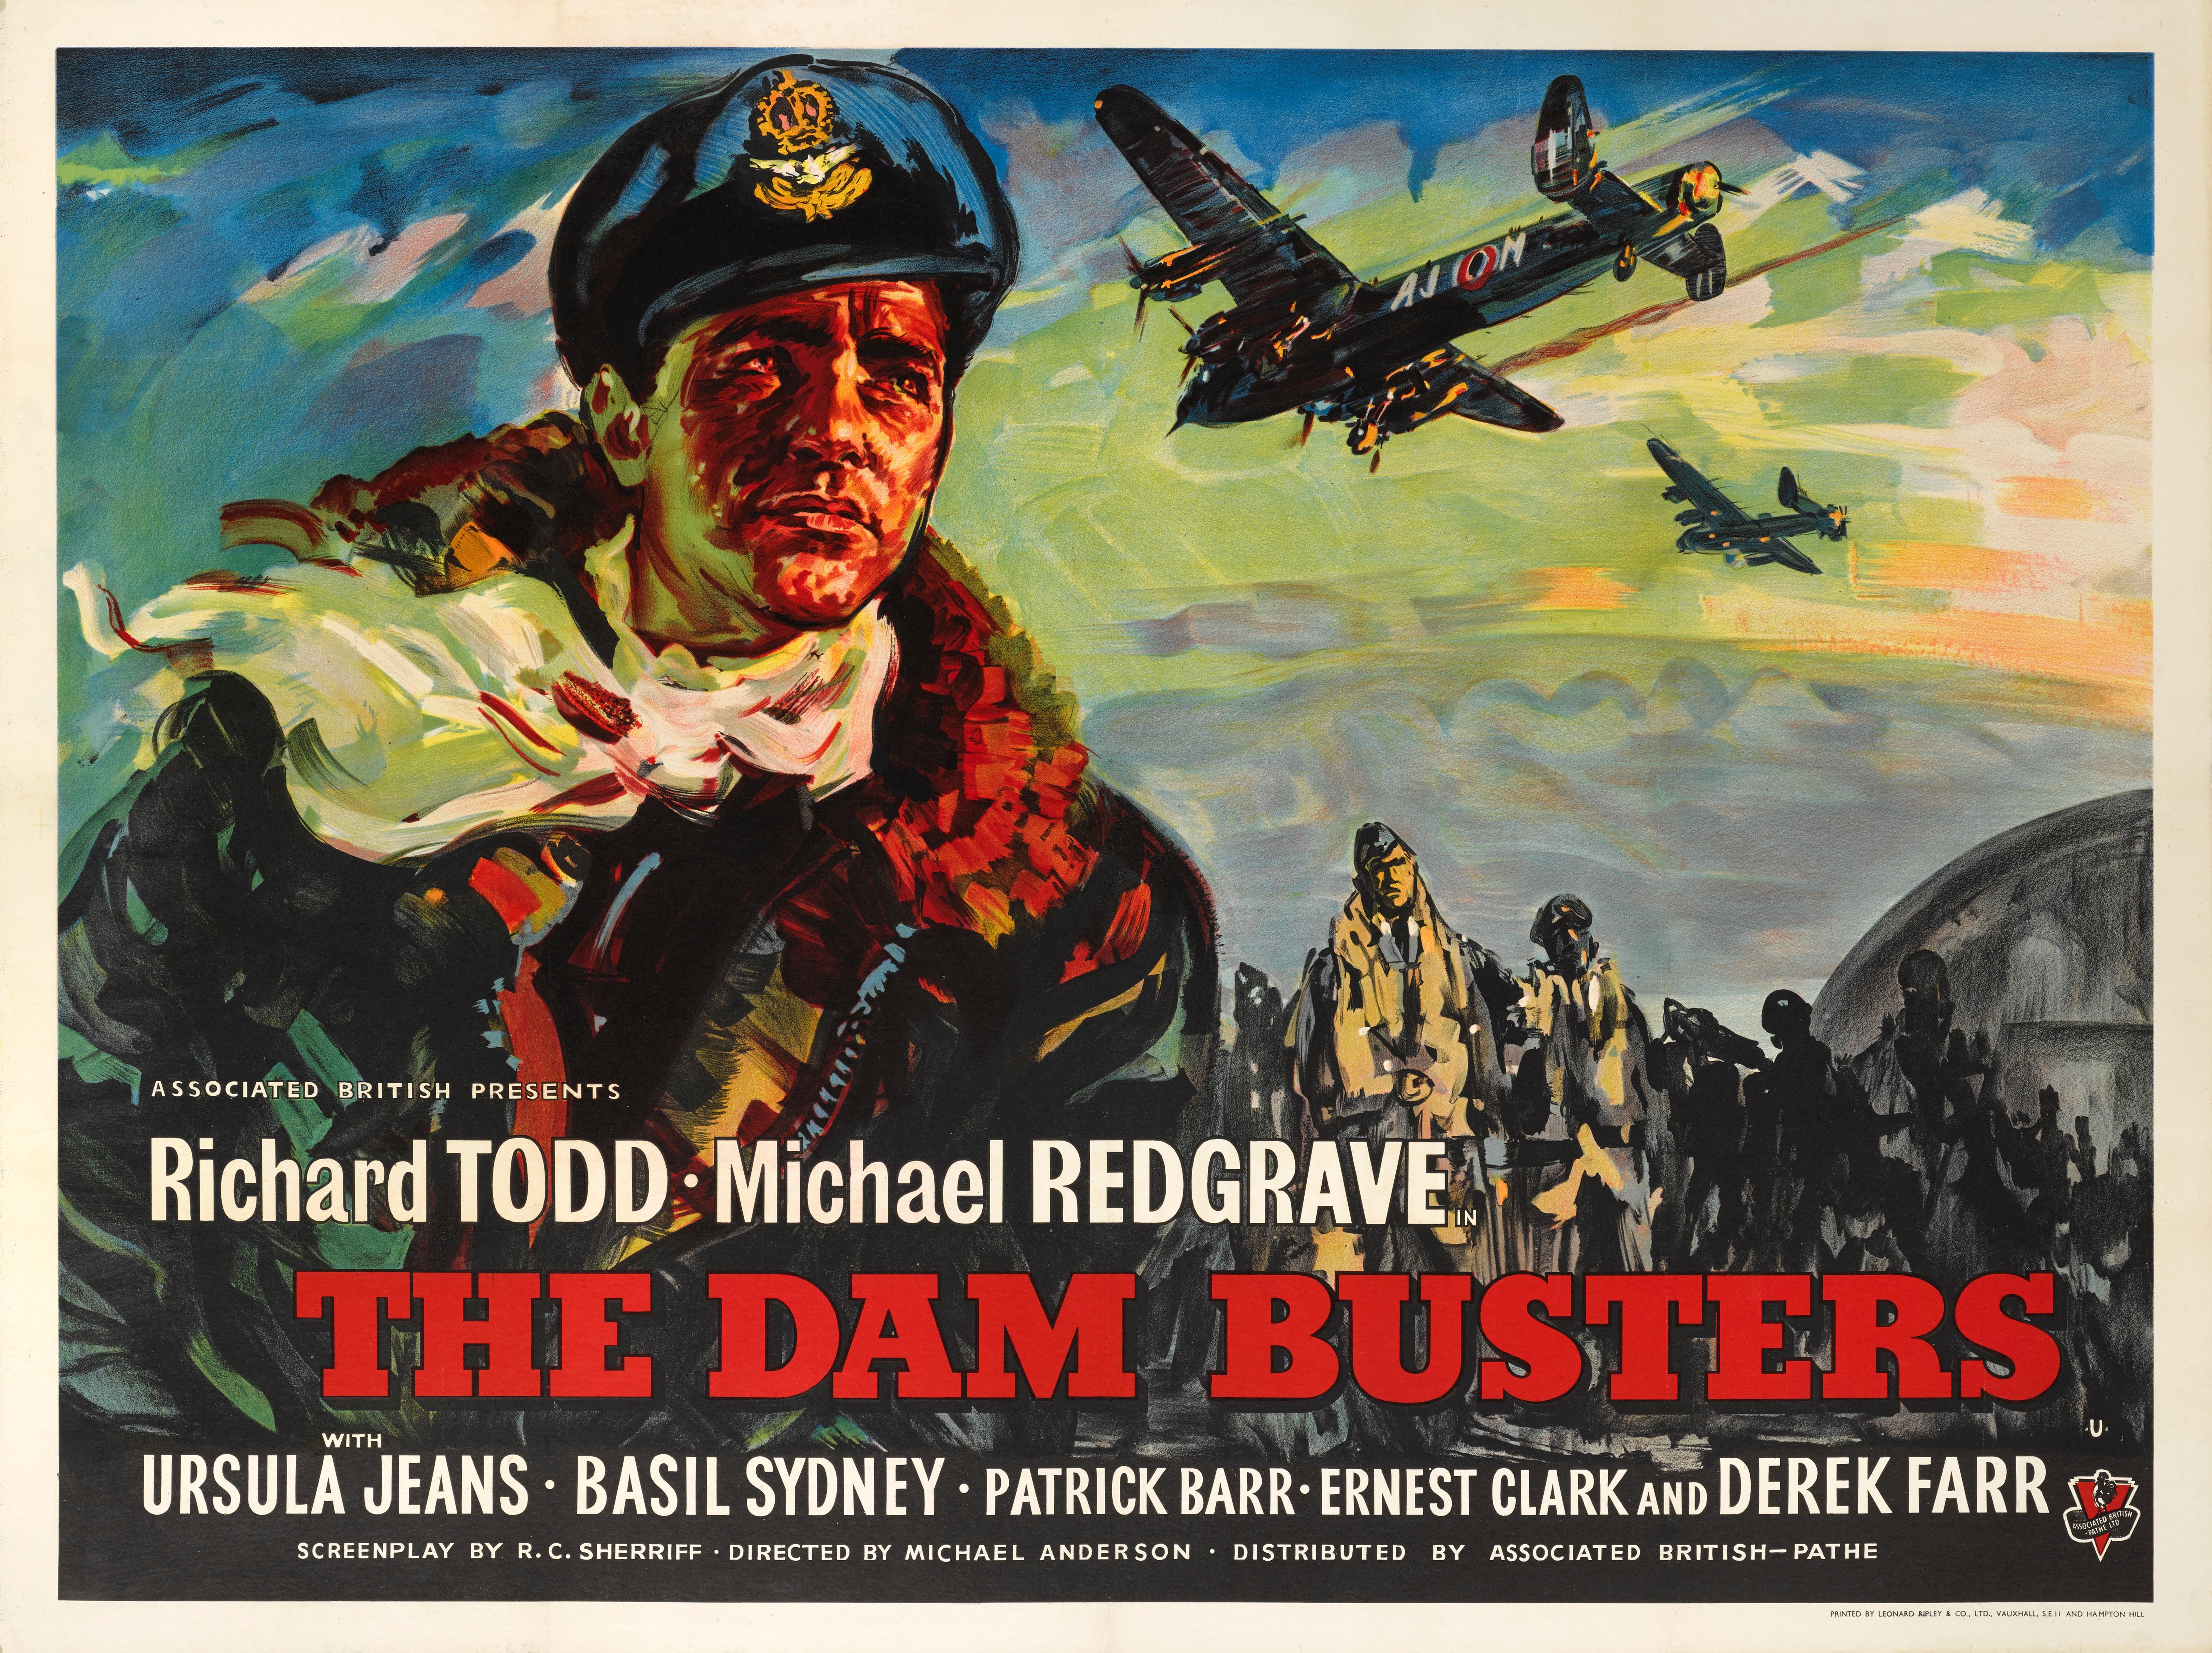 Affiche de film britannique originale pour The Dam Busters 1955. Ce film de guerre épique britannique a été réalisé par Michael Anderson, et met en vedette Richard Todd et Michael Redgrave. Il était basé sur deux livres, The Dam Busters de Paul